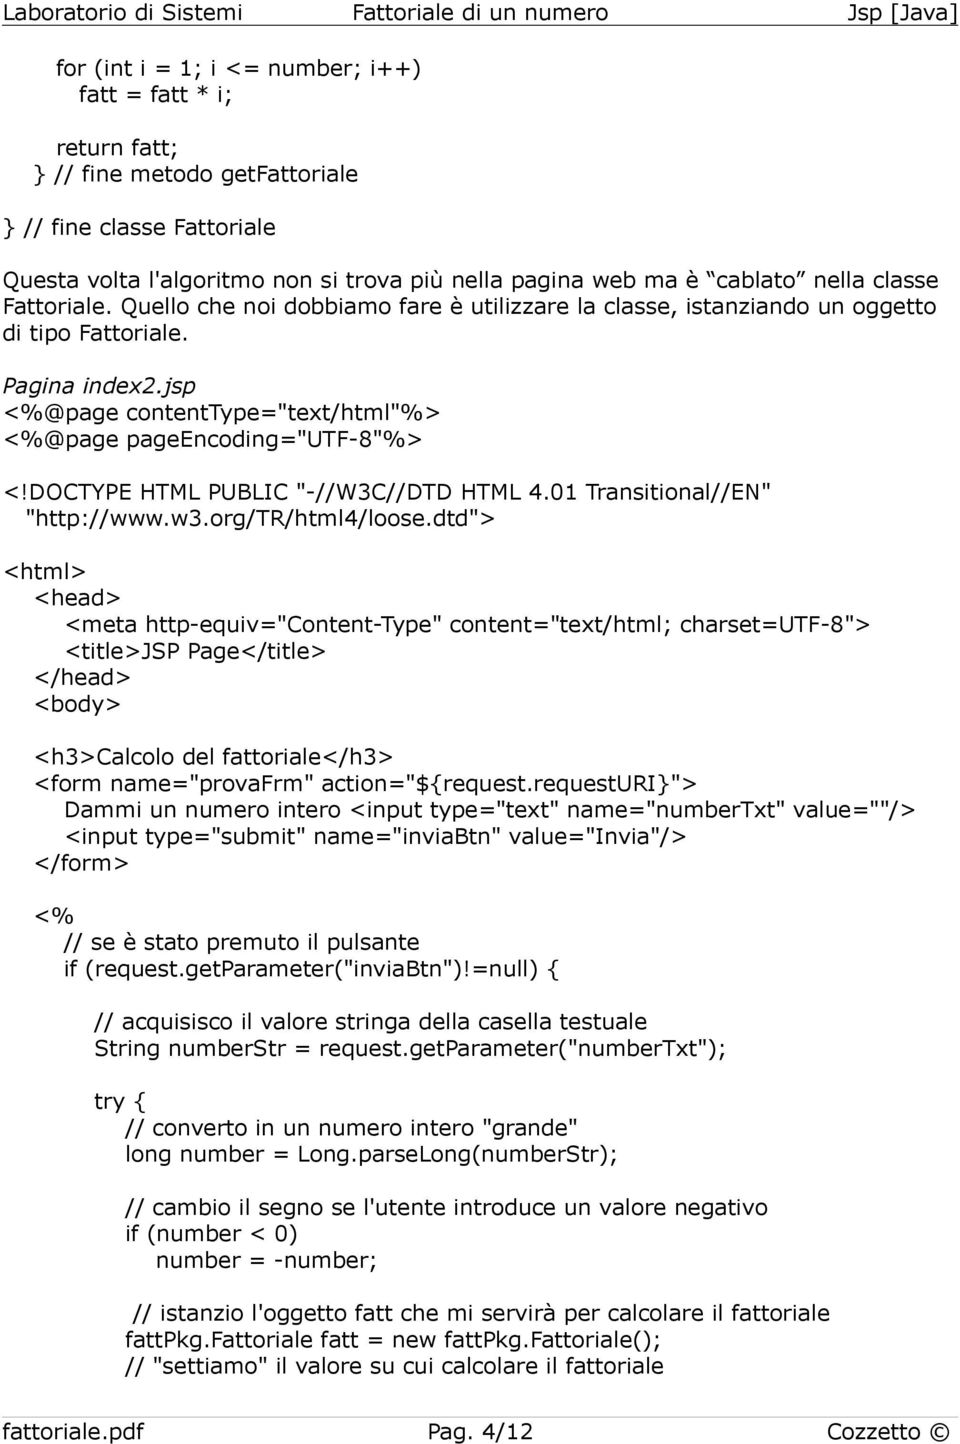 DOCTYPE HTML PUBLIC "-//W3C//DTD HTML 4.01 Transitional//EN" "http://www.w3.org/tr/html4/loose.